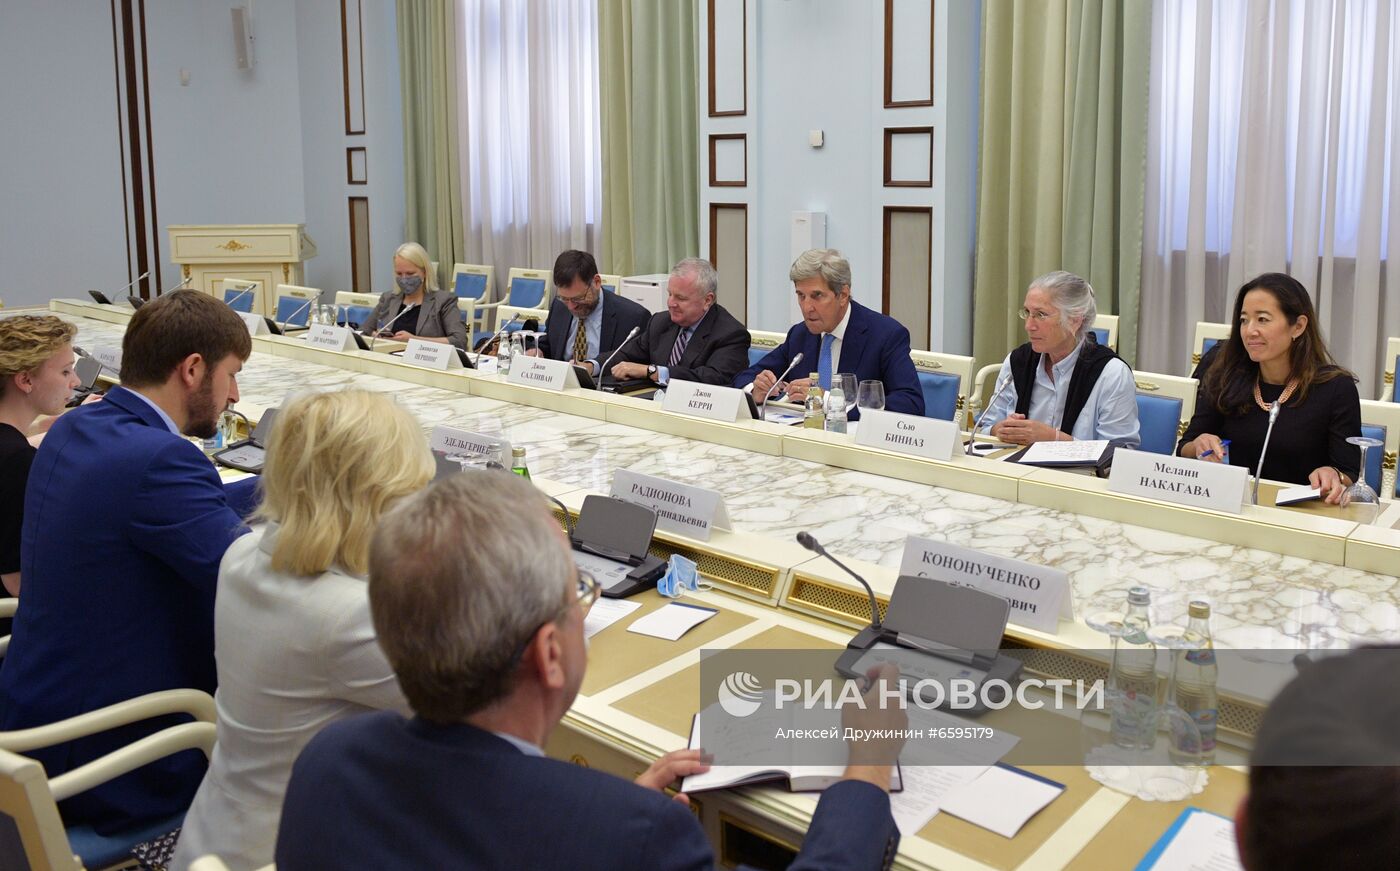 Встреча спецпредставителя президента РФ по вопросам климата Р. Эдельгериева и спецпредставителя президента США по вопросом климата Дж. Керри